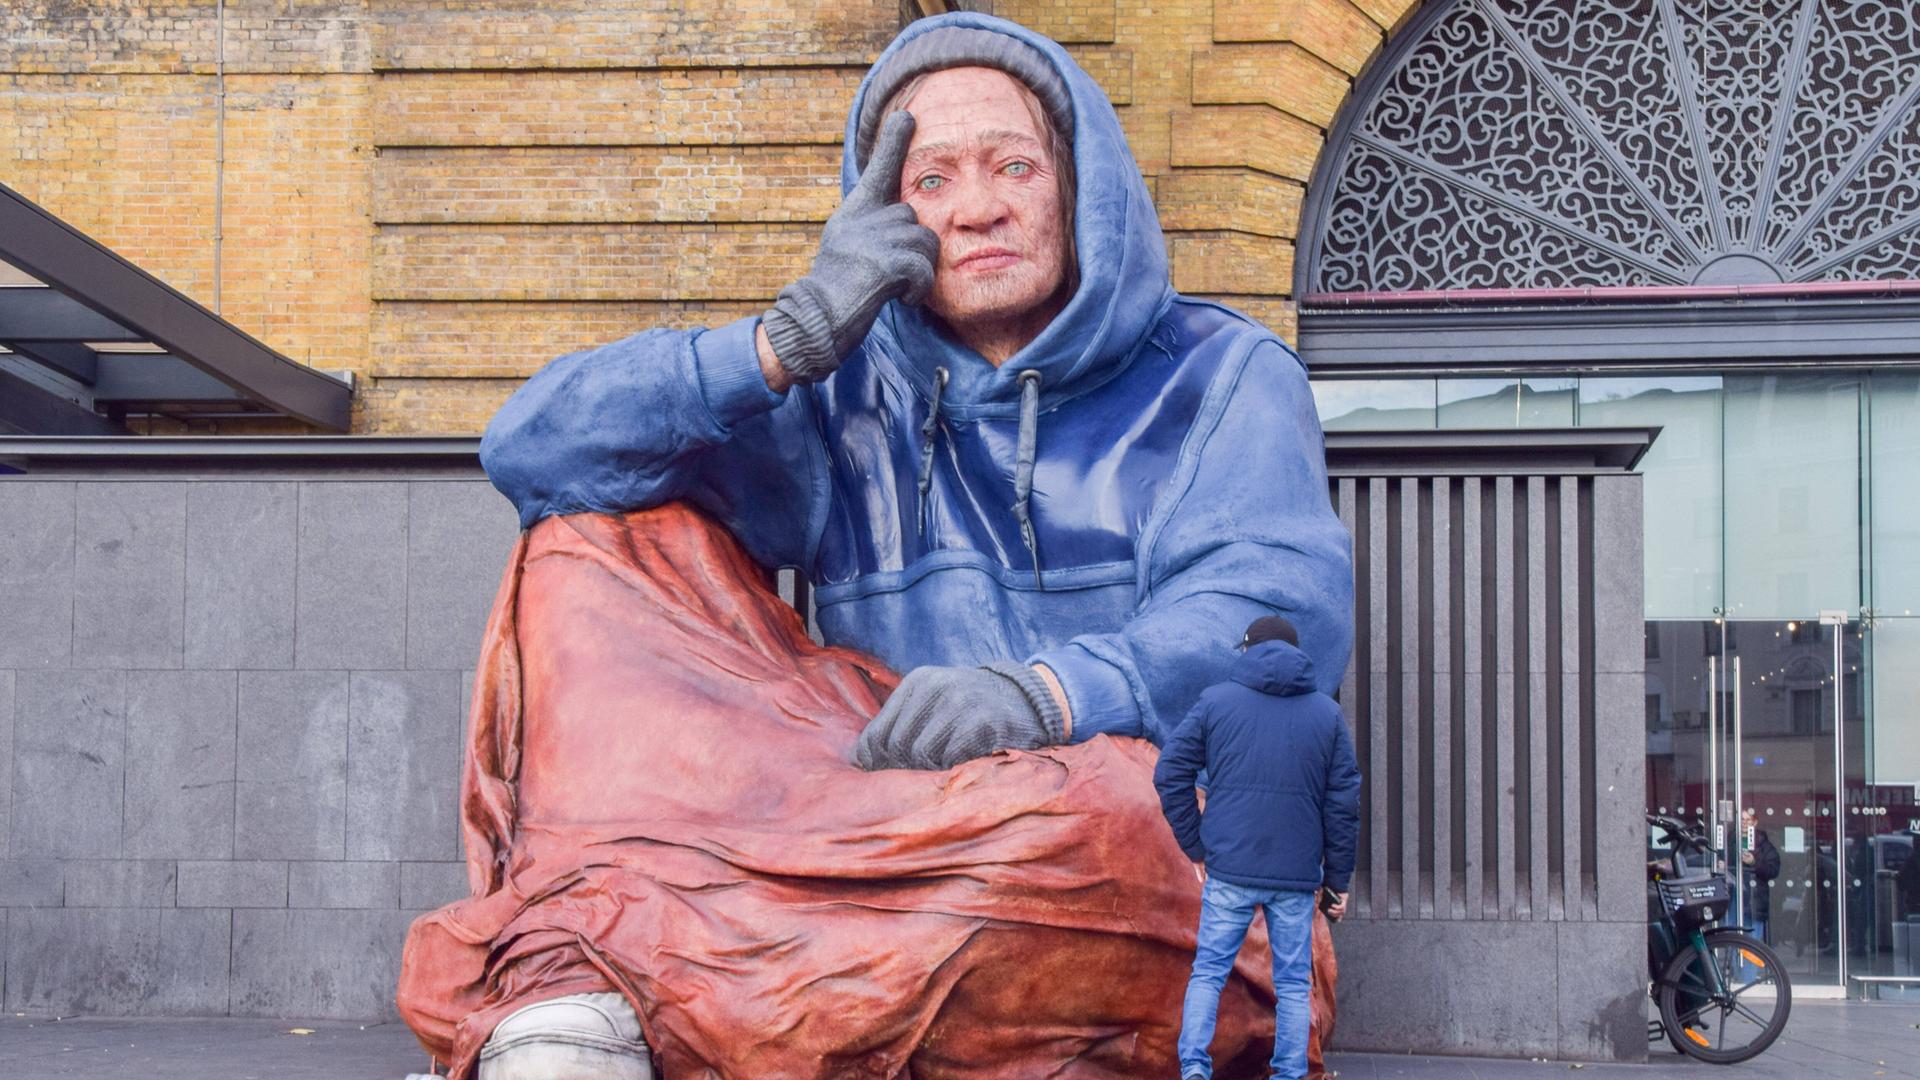 Vor der überlebensgroßen Skulptur einer obdachlosen Person steht ein Mann im Anorak, der der sitzenden Figur gerade bis zum Ellenbogen reicht.